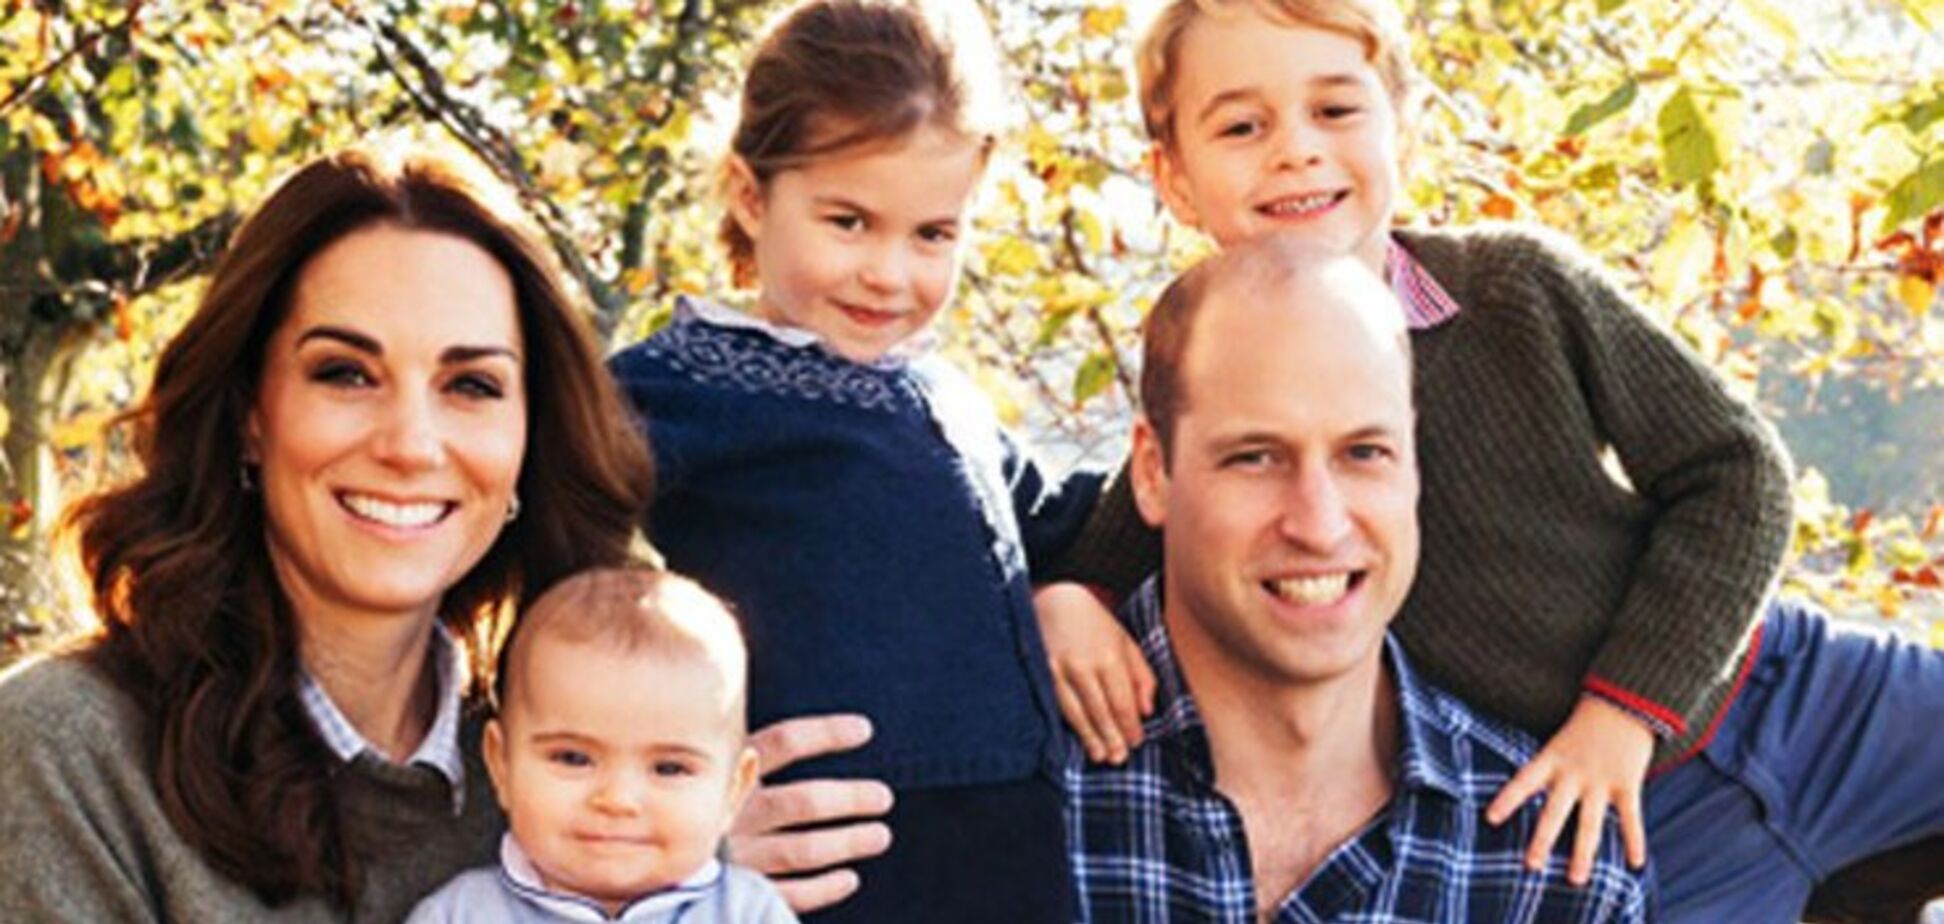 В сеть случайно слили редкое фото принца Уильяма и Кейт Миддлтон с детьми